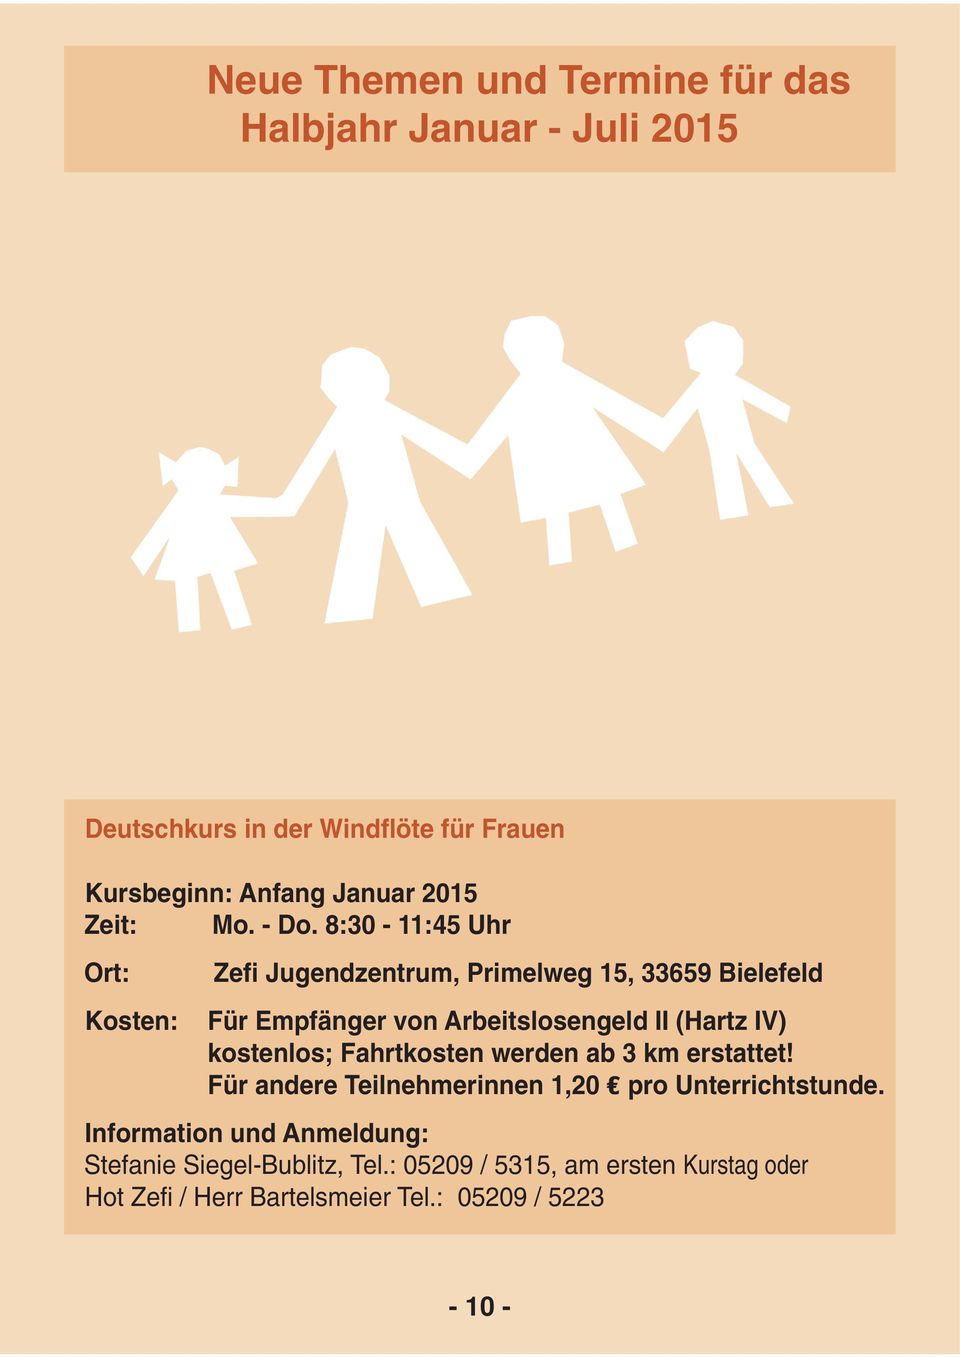 8:30-11:45 Uhr Ort: Kosten: Zefi Jugendzentrum, Primelweg 15, 33659 Bielefeld Für Empfänger von Arbeitslosengeld II (Hartz IV)